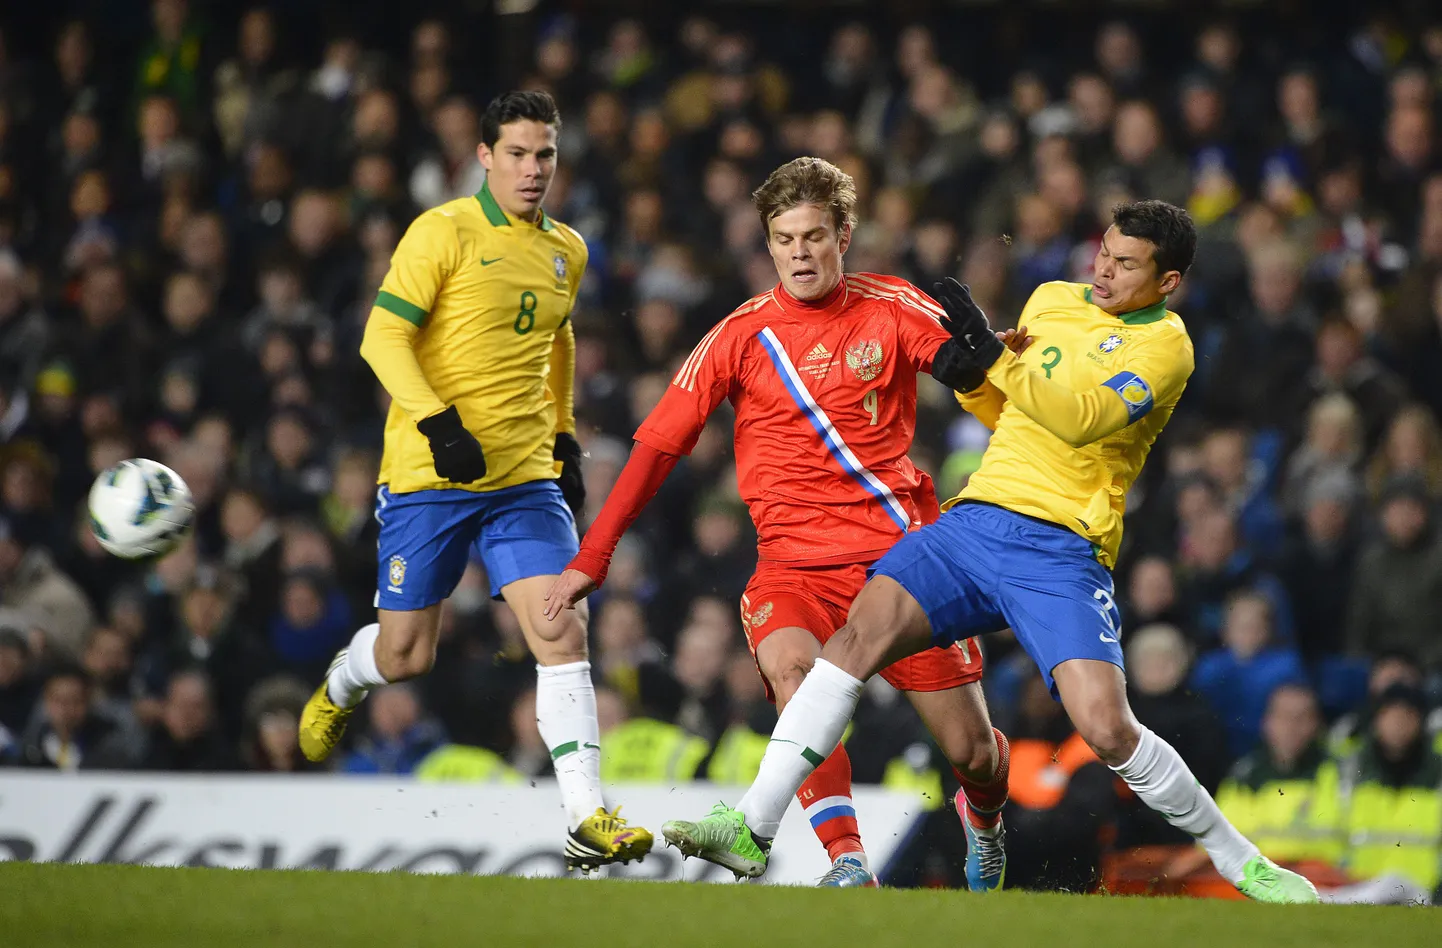 Момент матча Бразилия - Россия в Лондоне (25.03.2013).